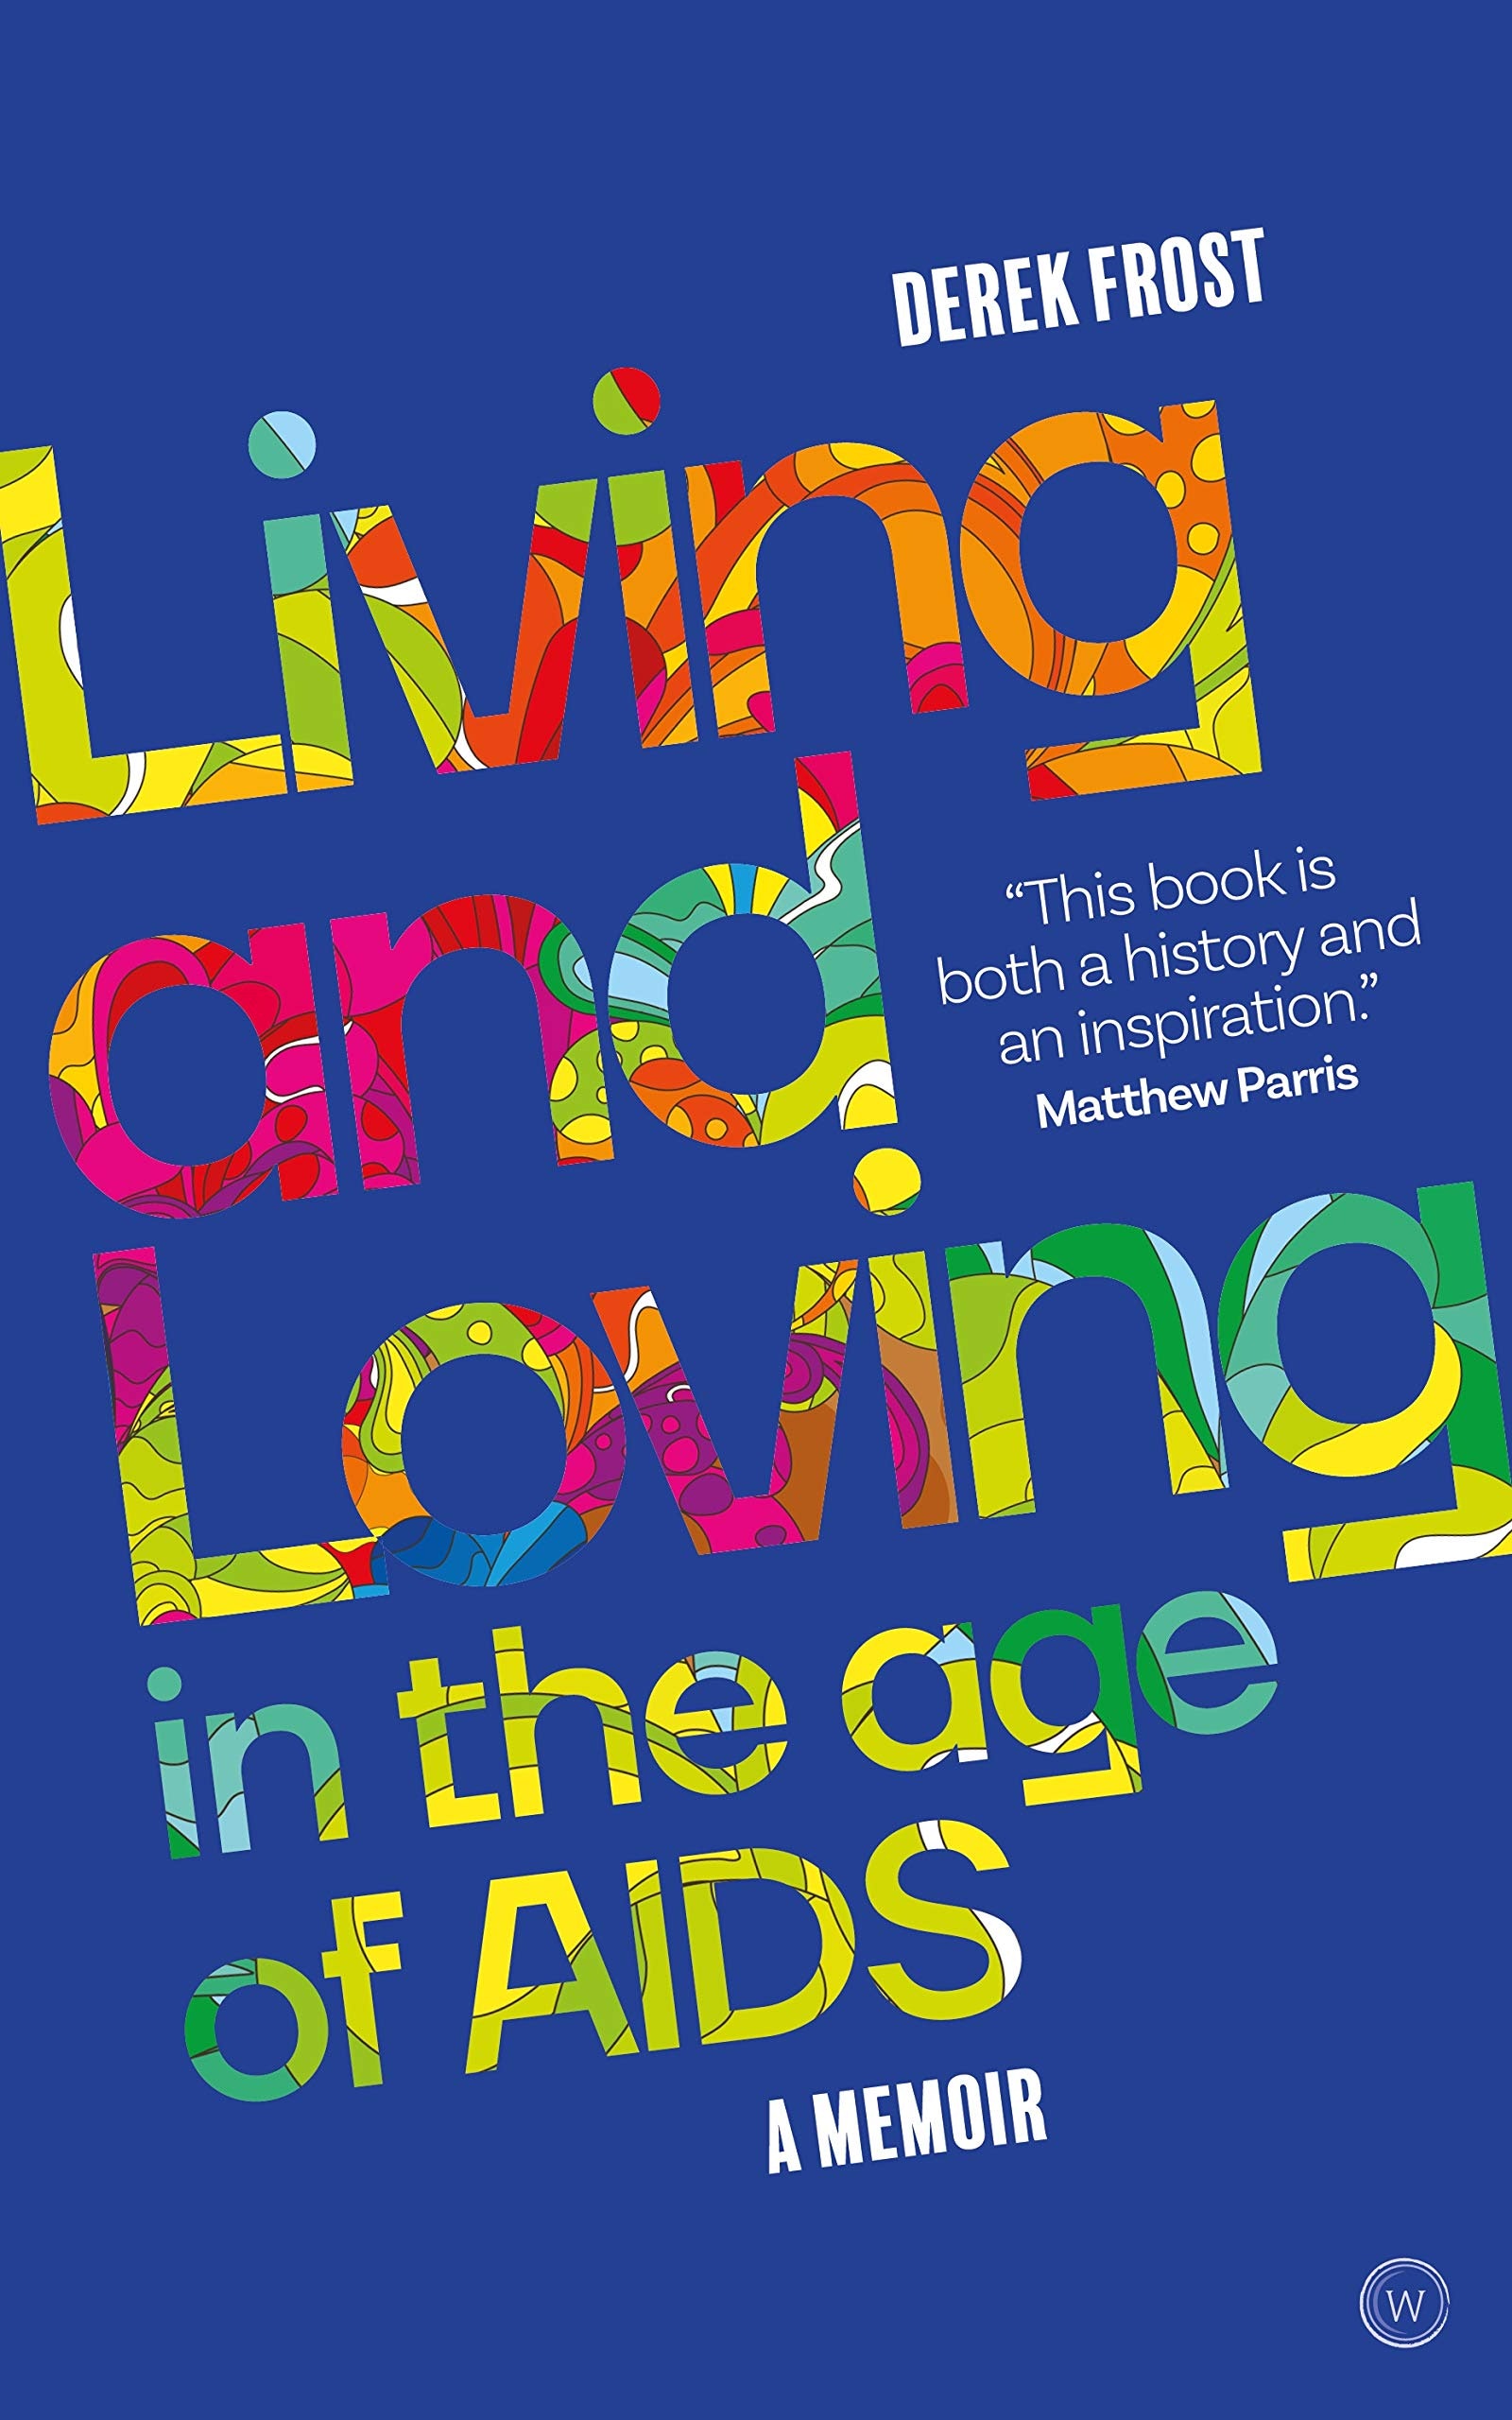 Leben und Lieben im Zeitalter von AIDS von Derek Frost ist eine Erfolgsgeschichte — AUSZUG